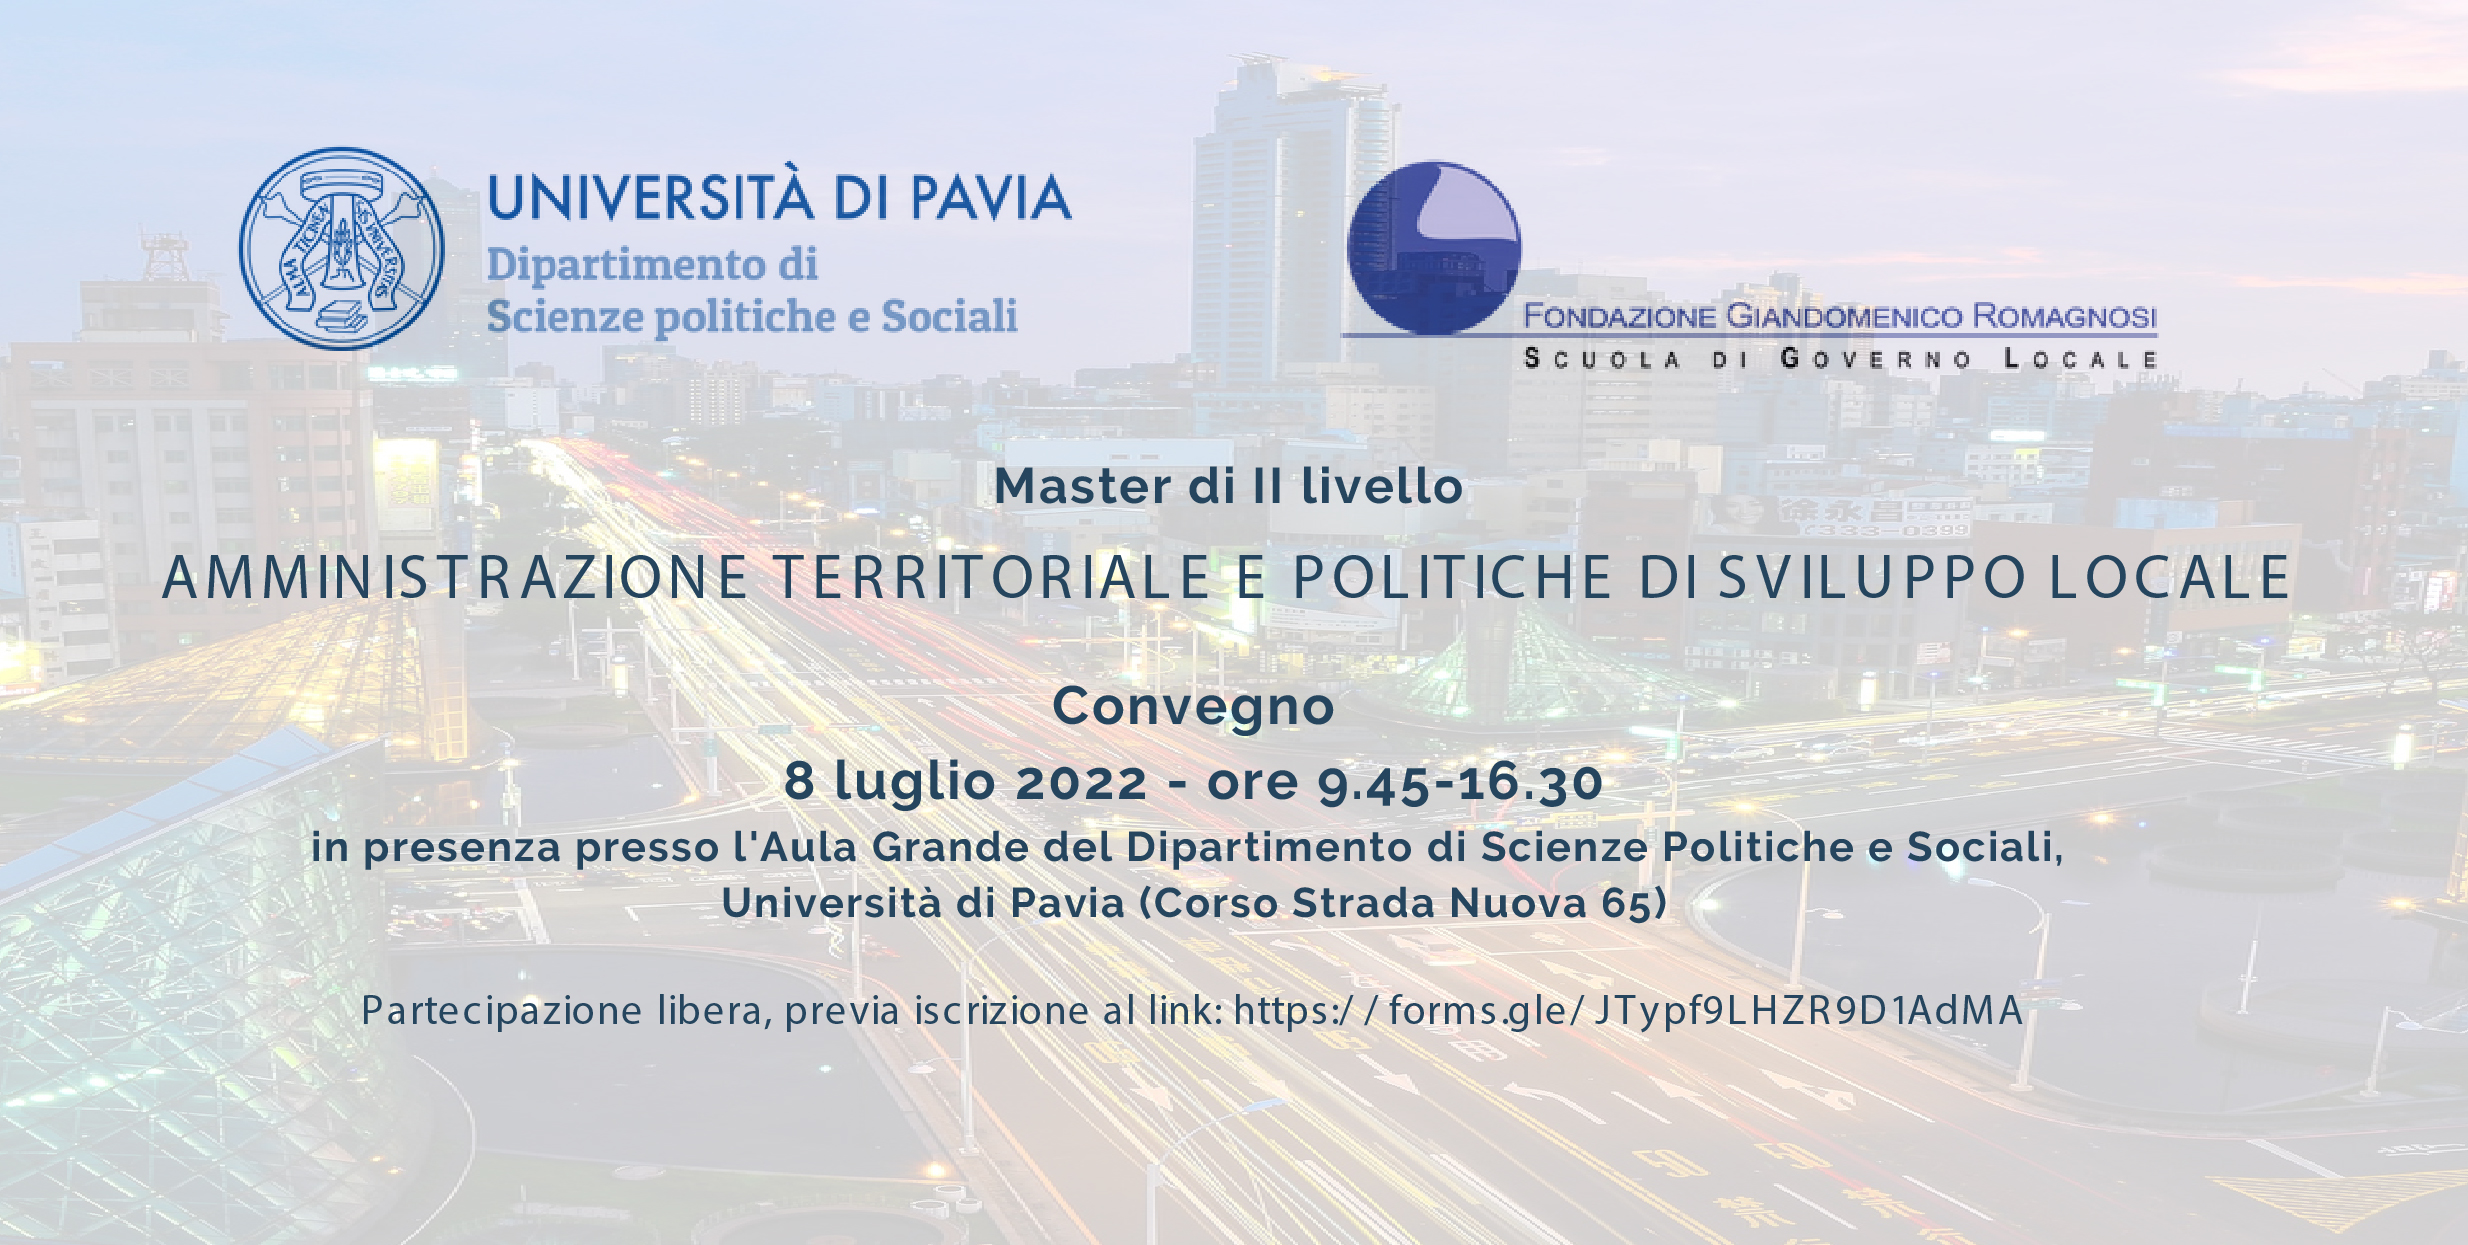 Convegno Master di II livello in Amministrazione territoriale e politiche di sviluppo locale – venerdì 8 luglio 2022